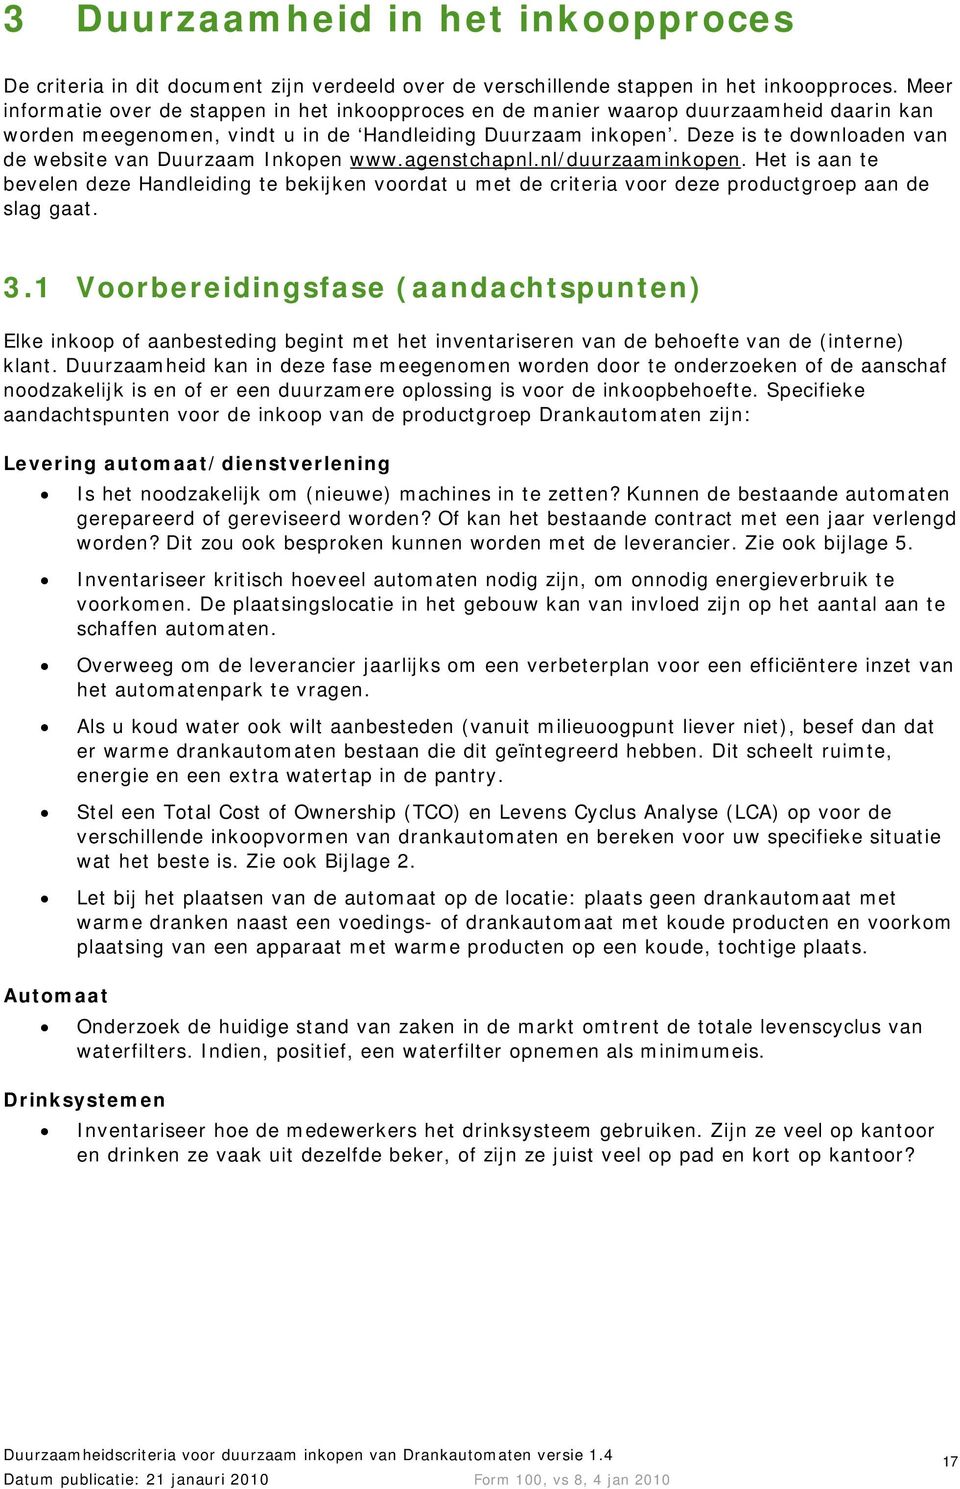 Deze is te downloaden van de website van Duurzaam Inkopen www.agenstchapnl.nl/duurzaaminkopen.